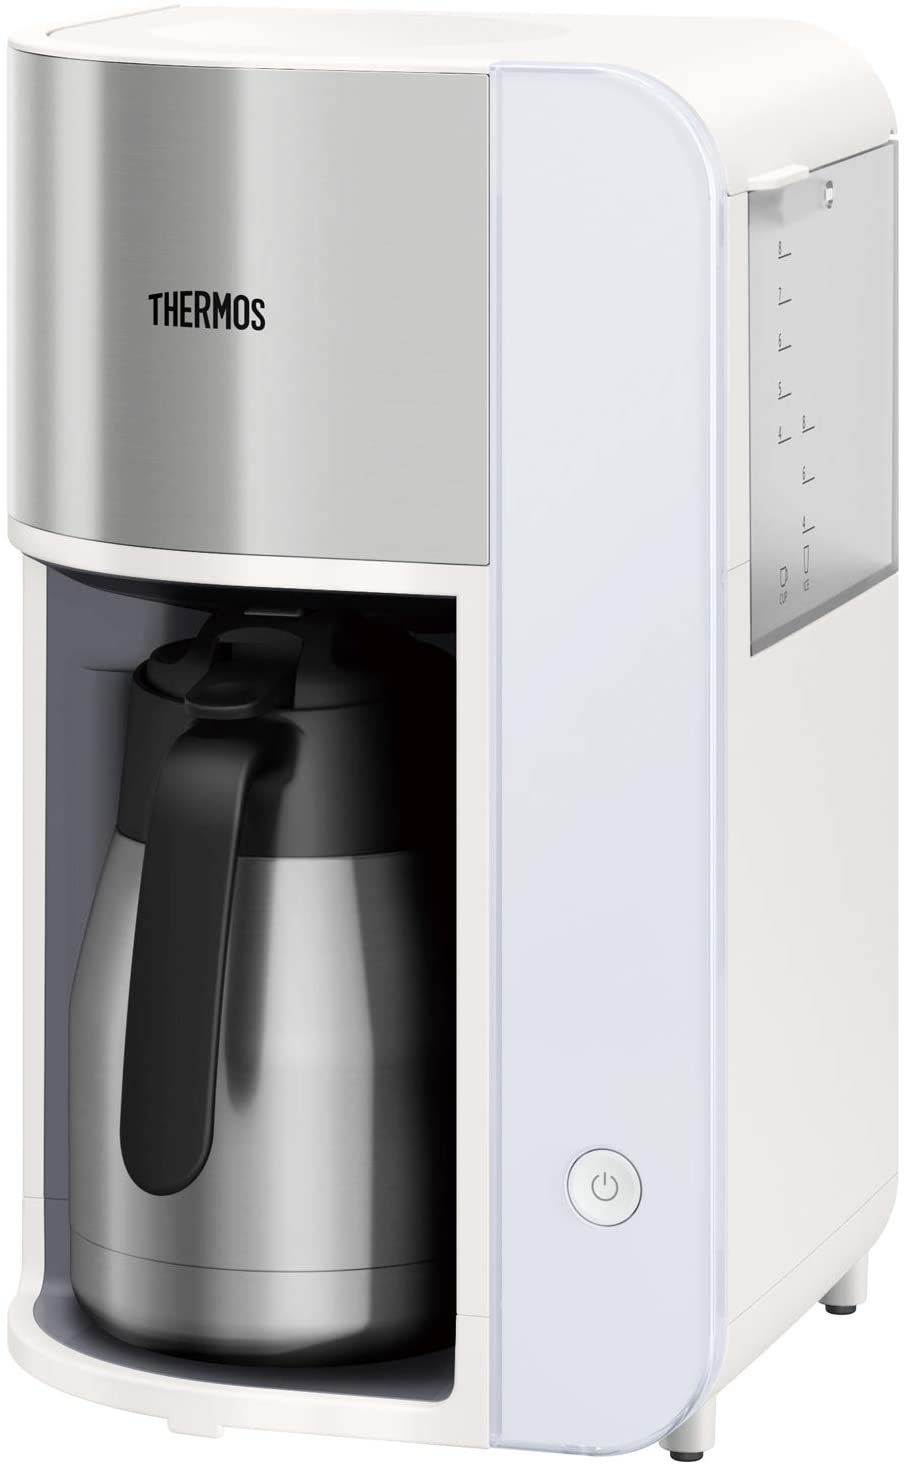 日本代購 空運 THERMOS 膳魔師 ECK-1000 美式 咖啡機 真空斷熱 不鏽鋼 保溫壺 1L 8杯分